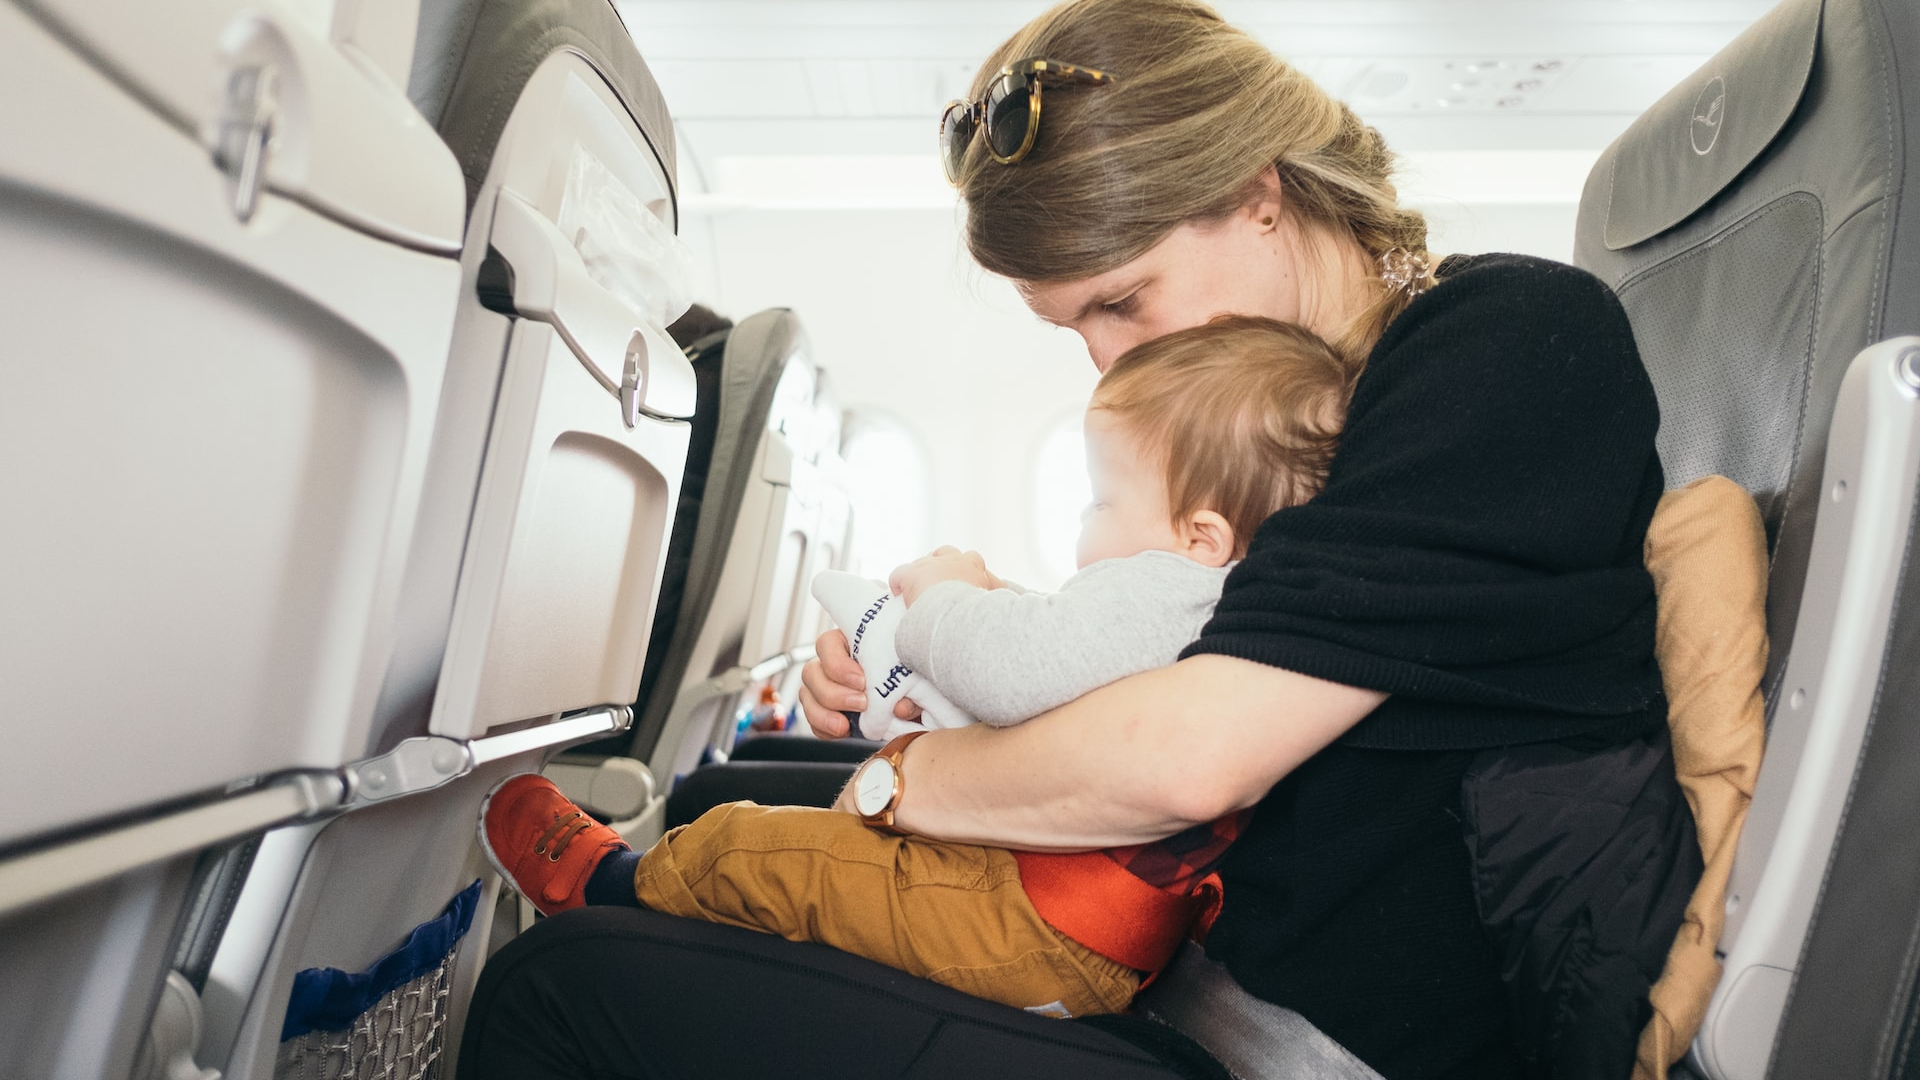 Dieťa a matka na palube lietadla